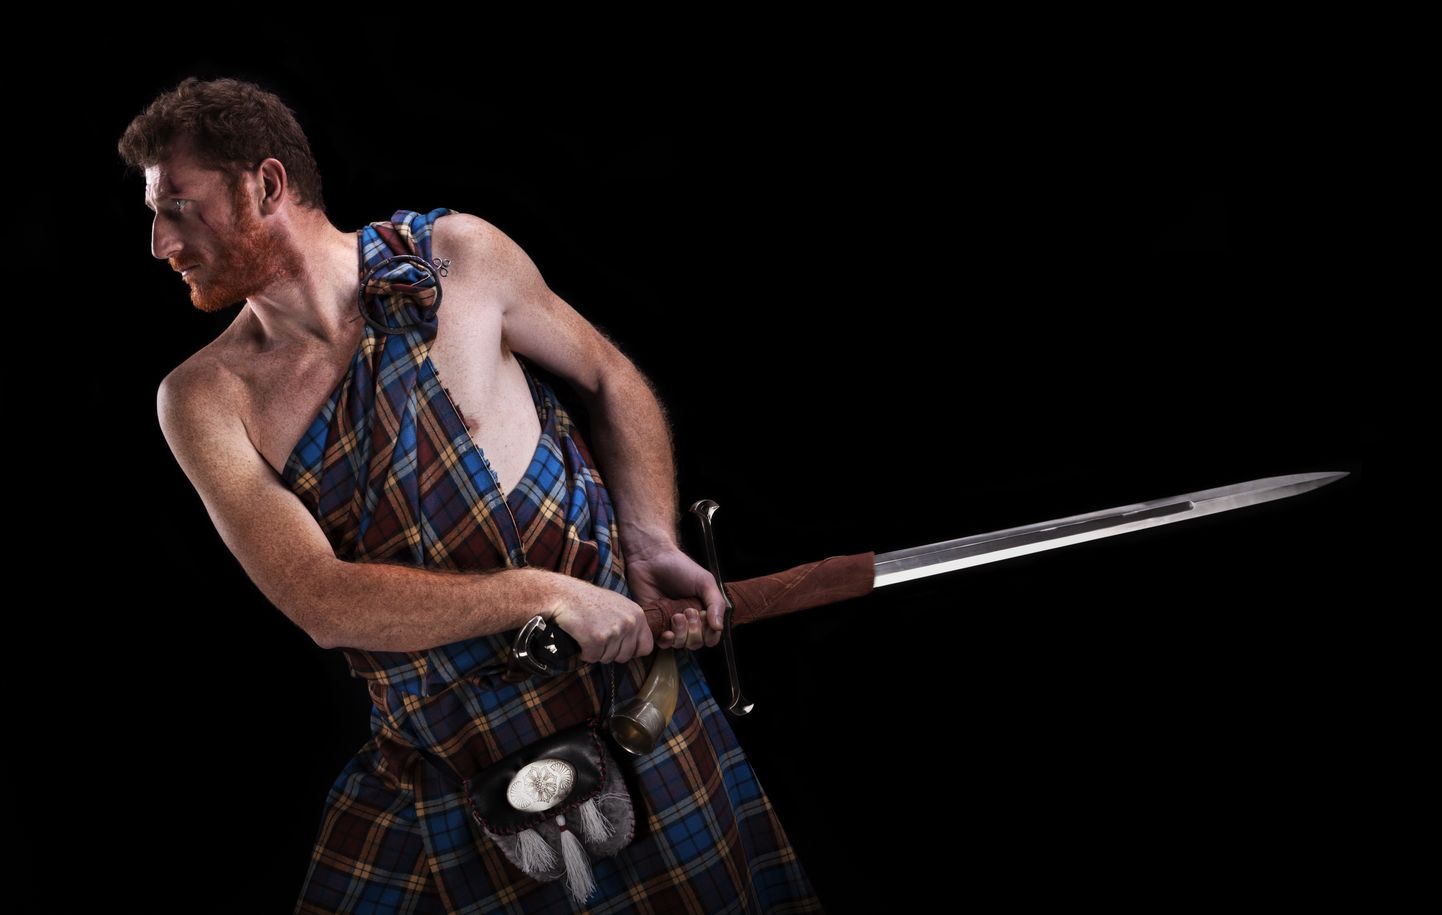 Šoti sõdalaseks kehastunu kildis ja traditsioonilise mõõgaga. Pilt on illustreeriv